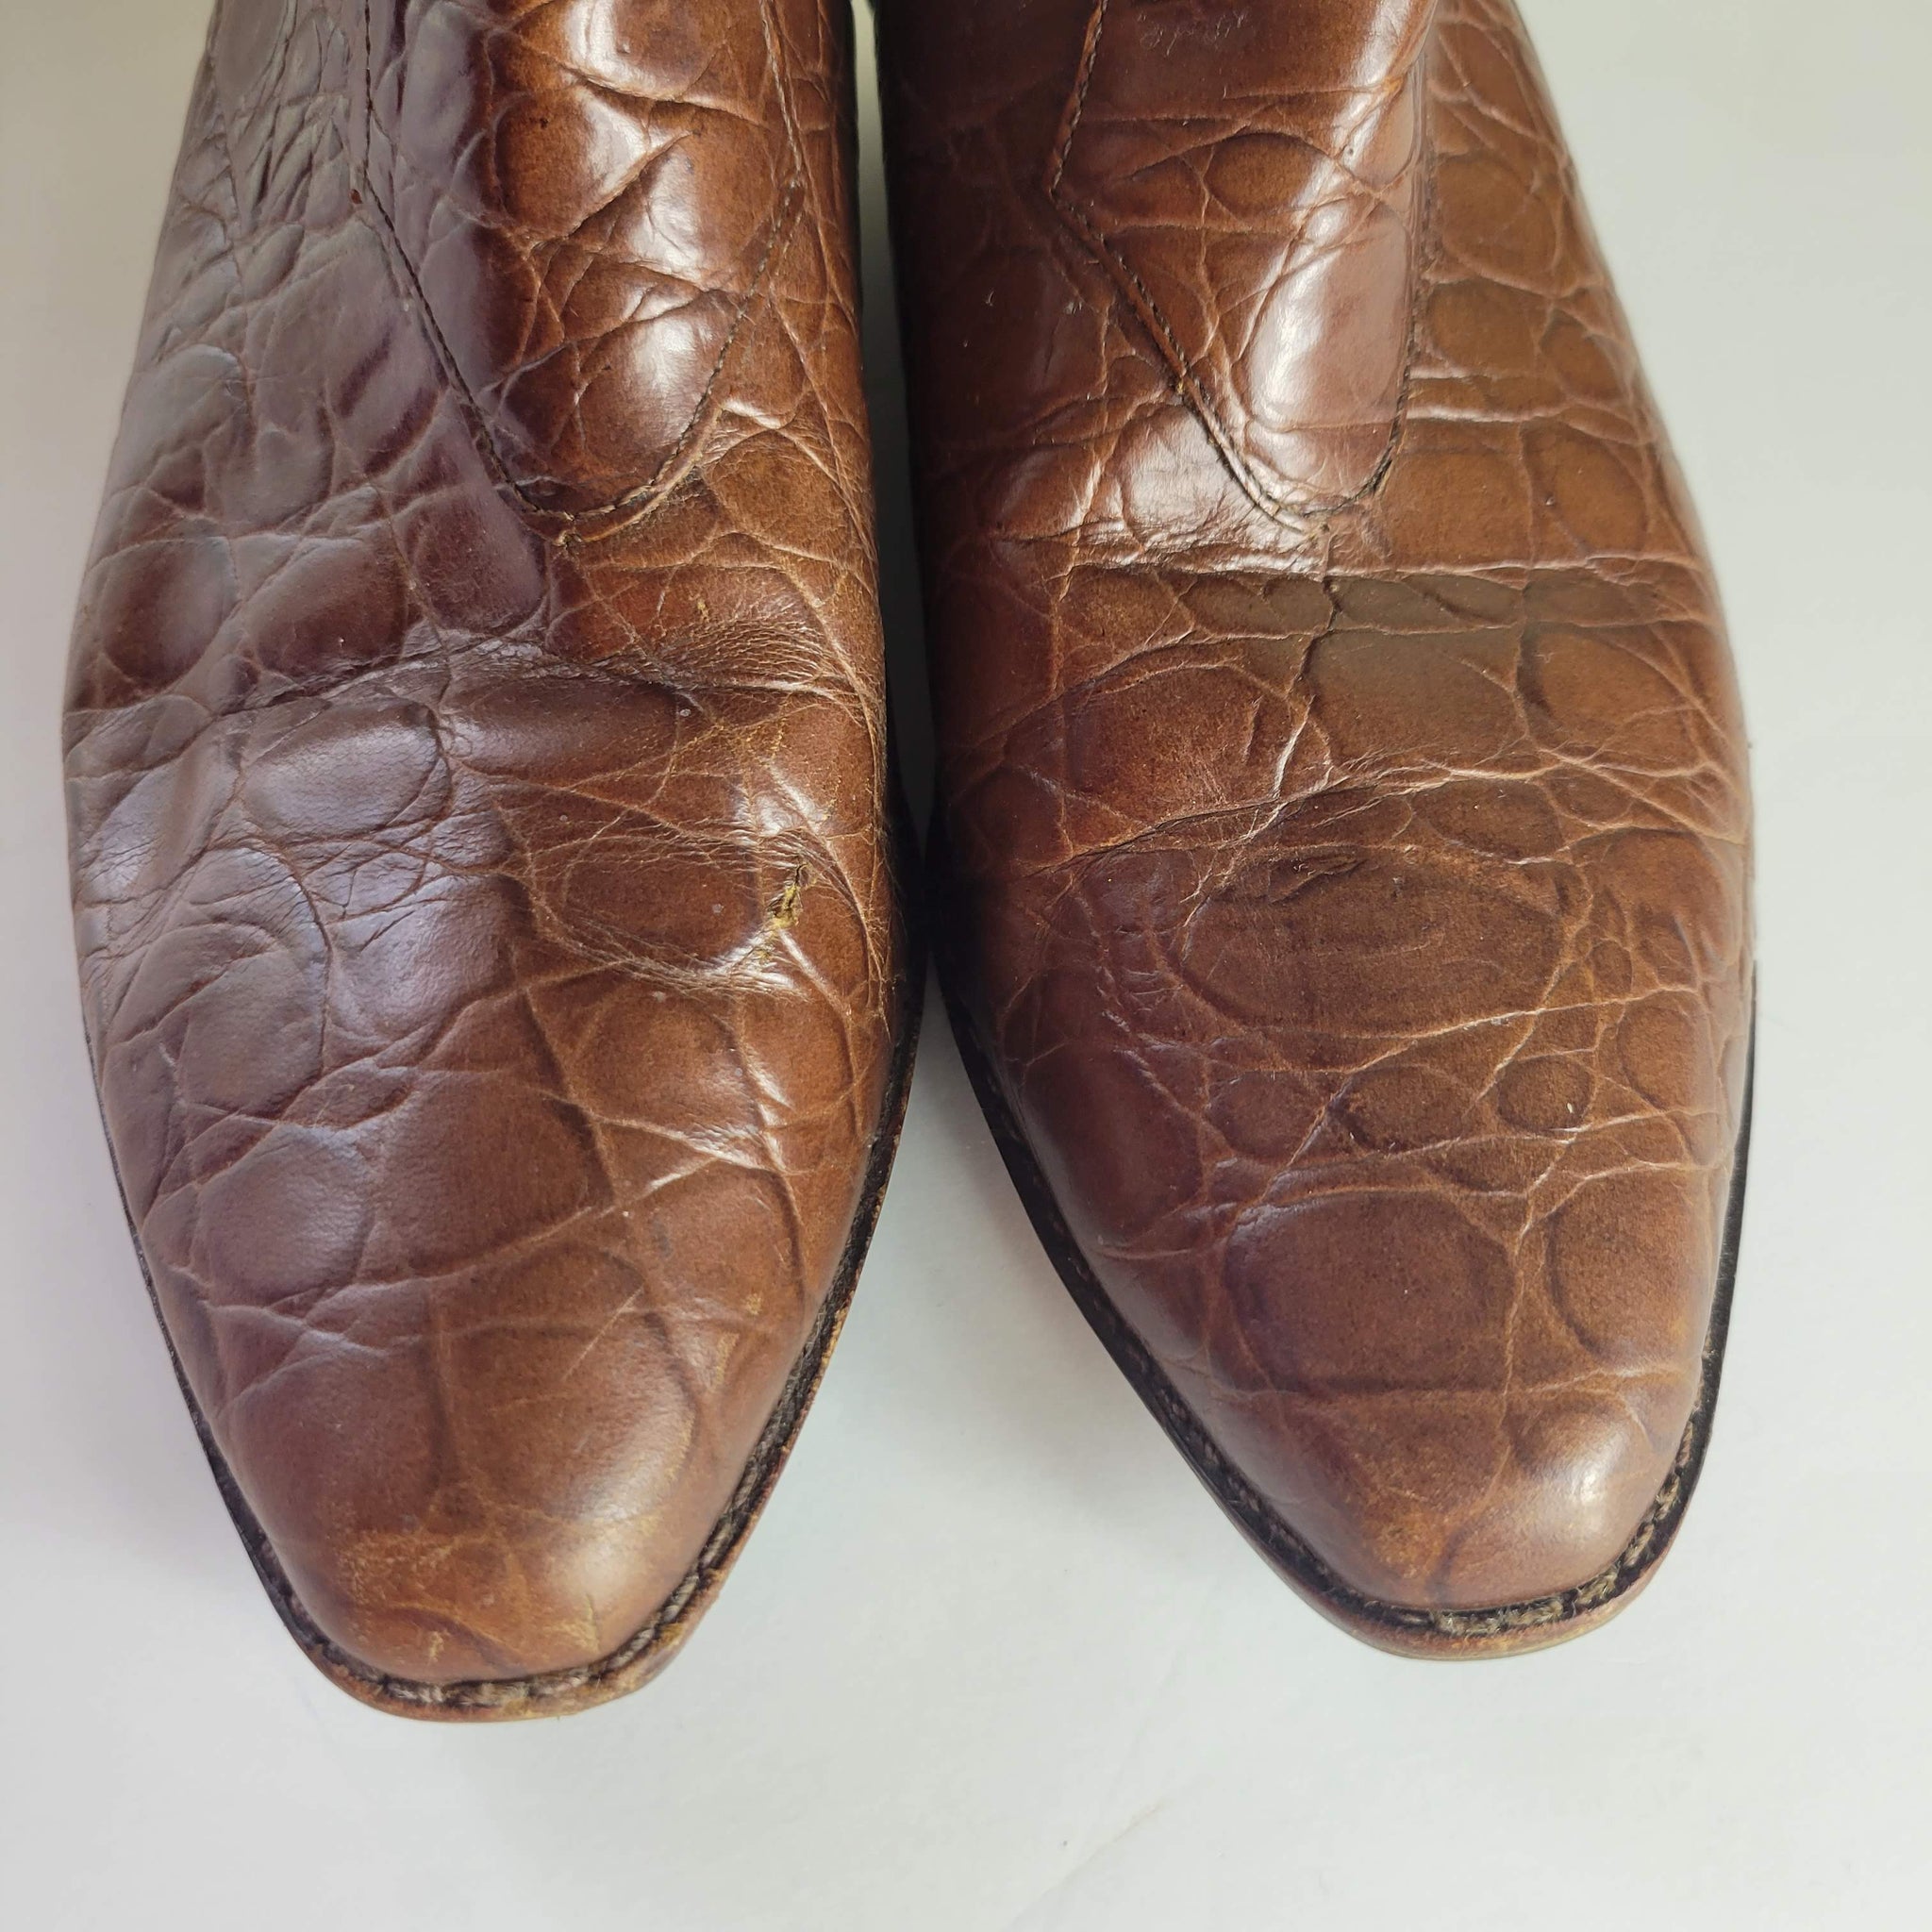 Vintage Unisa Croc Cowboy Boots Size 7.5